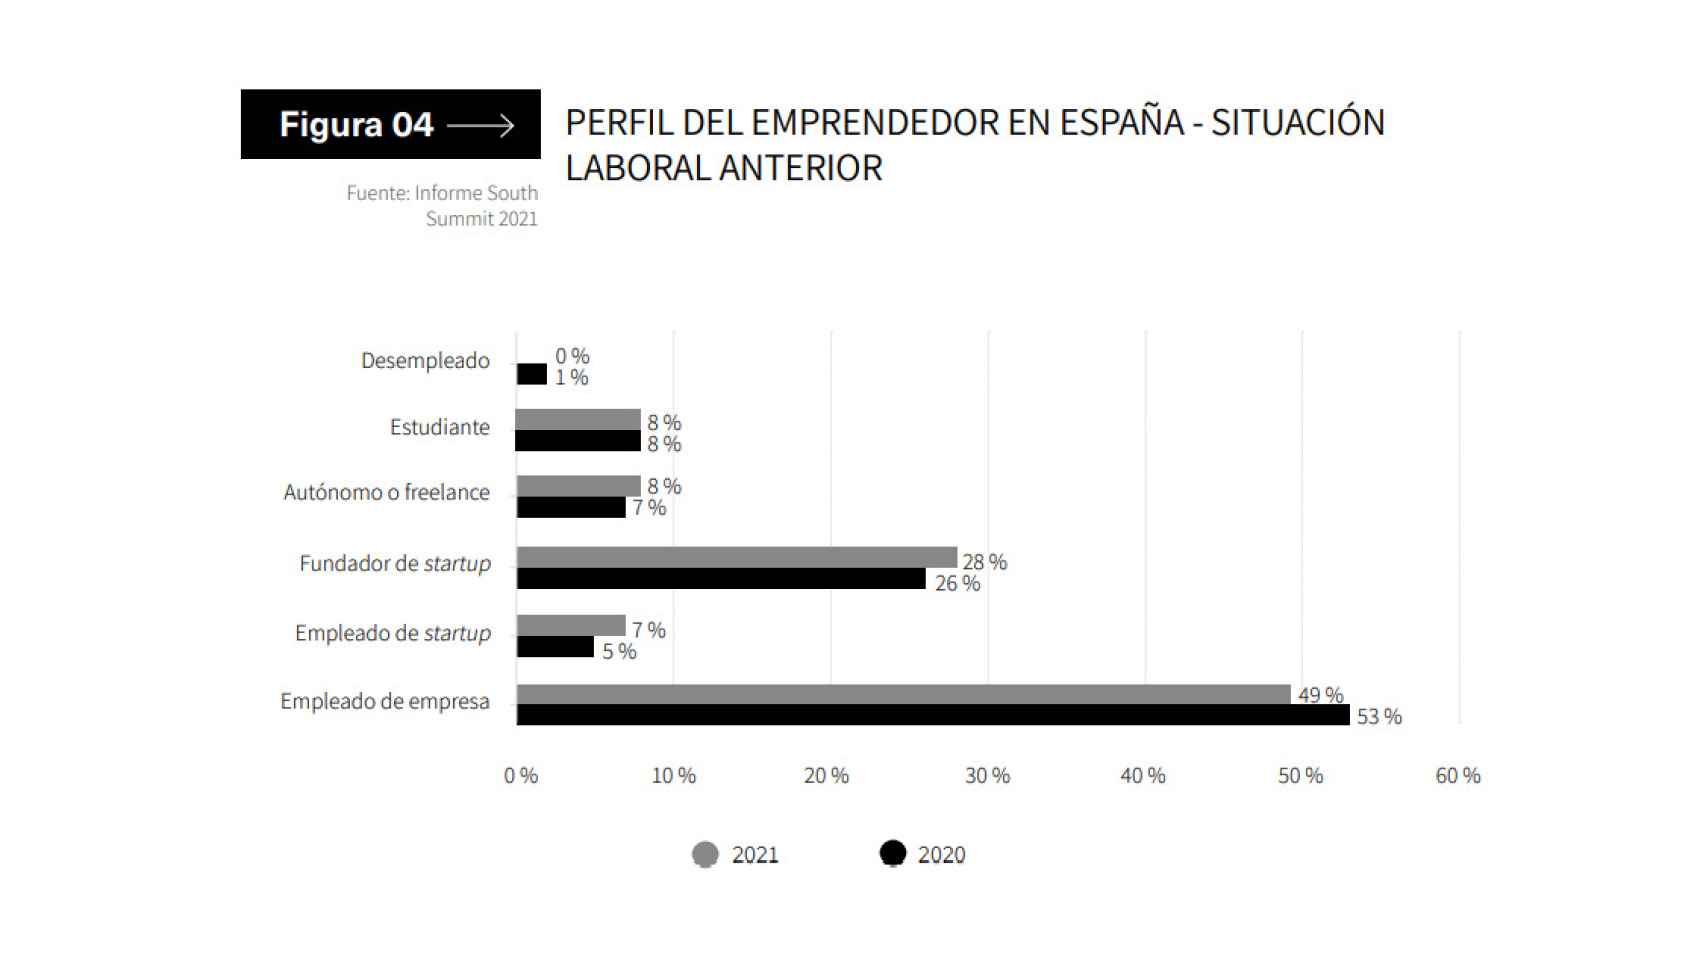 Perfil del emprendedor en España según el informe de OBS.